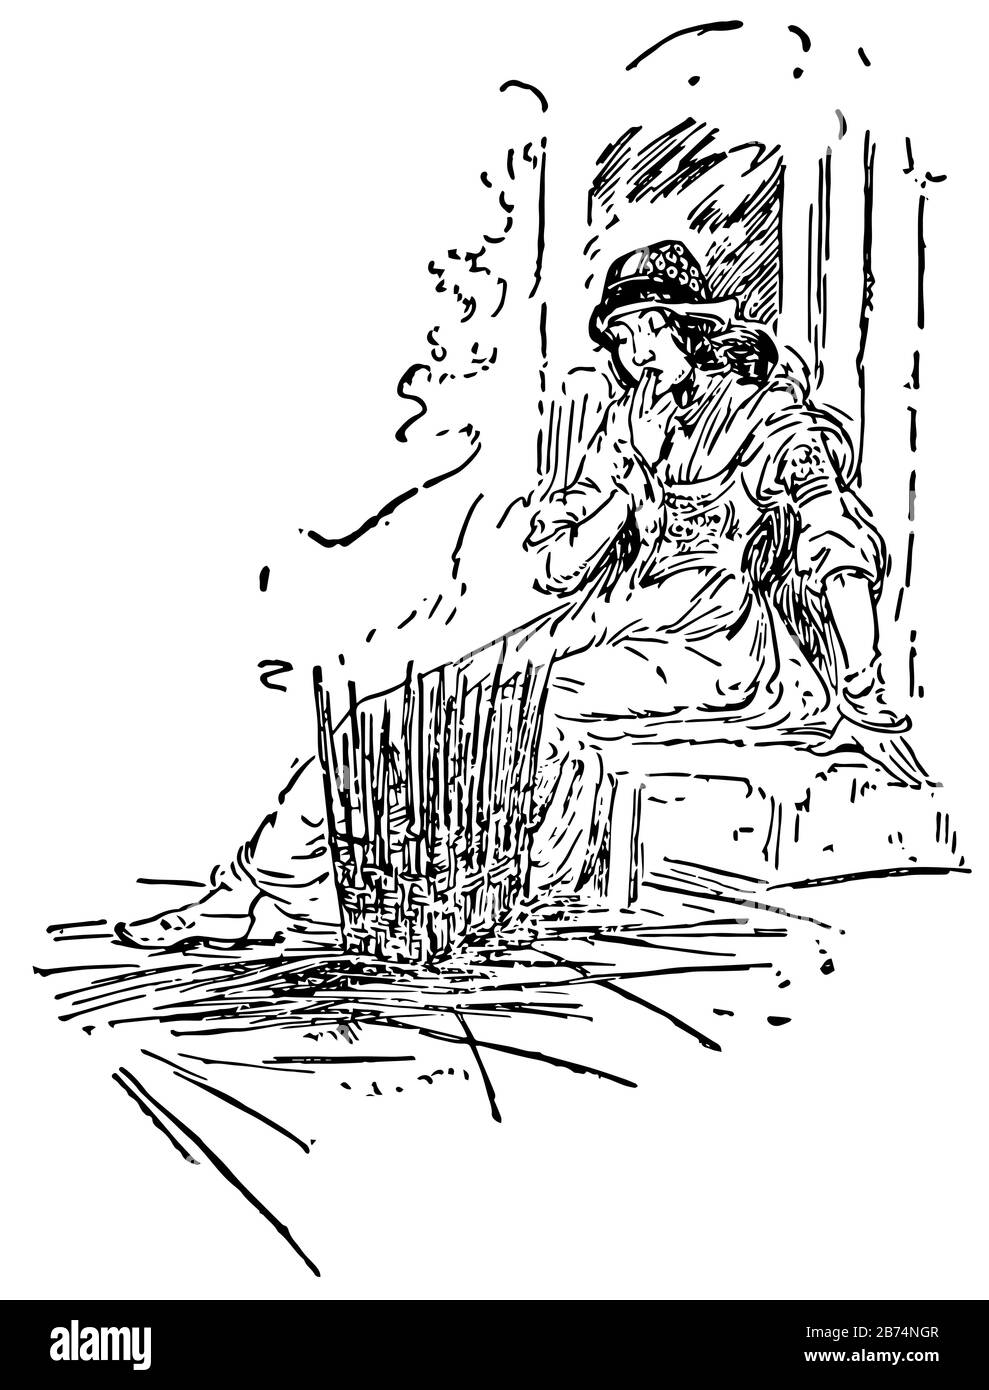 Gripple-Beard, questa scena mostra una femmina seduto che guarda il cesto fatto di bastoni di legno, linea vintage disegno o incisione illustrazione Illustrazione Vettoriale